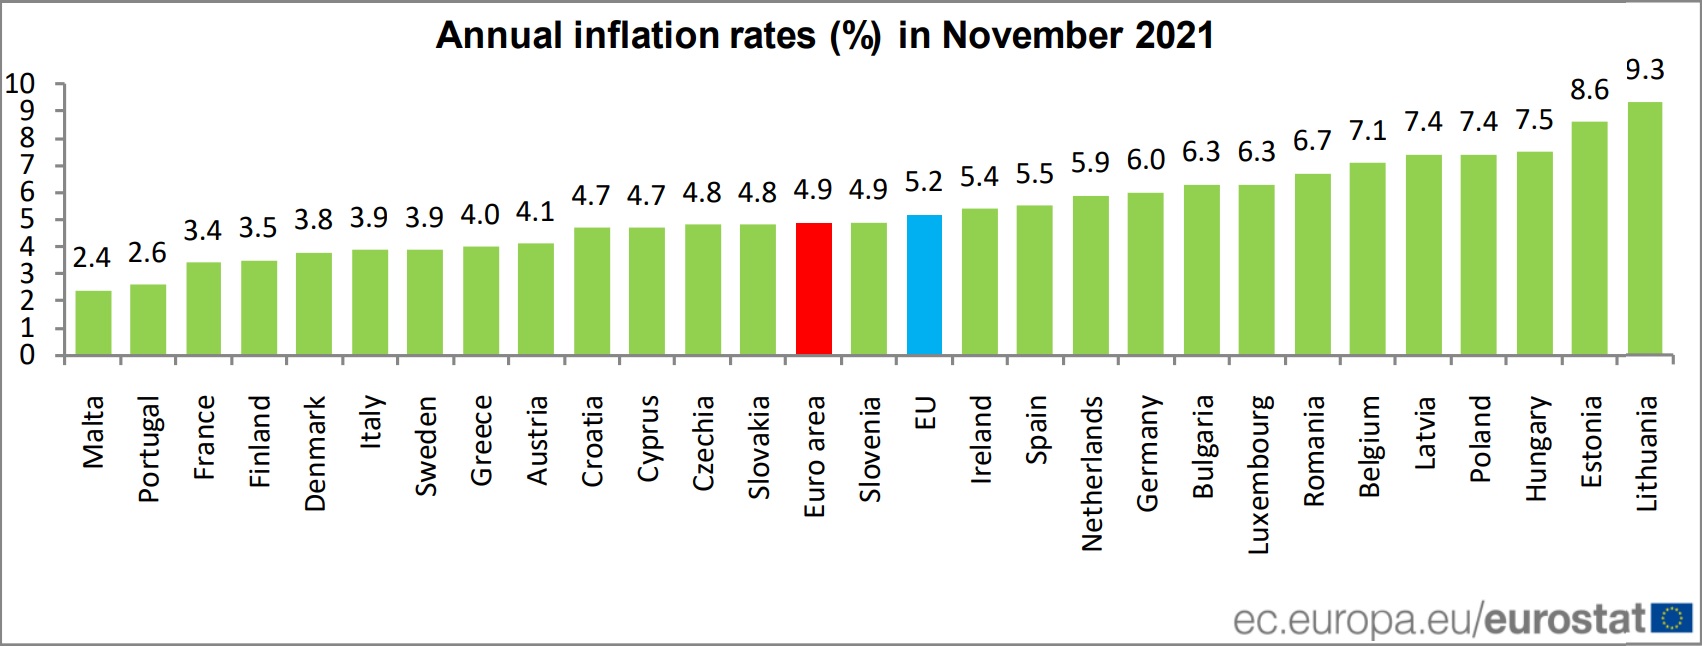 inflacion-anual-en-noviembre-de-2021-en-la-ue.jpg